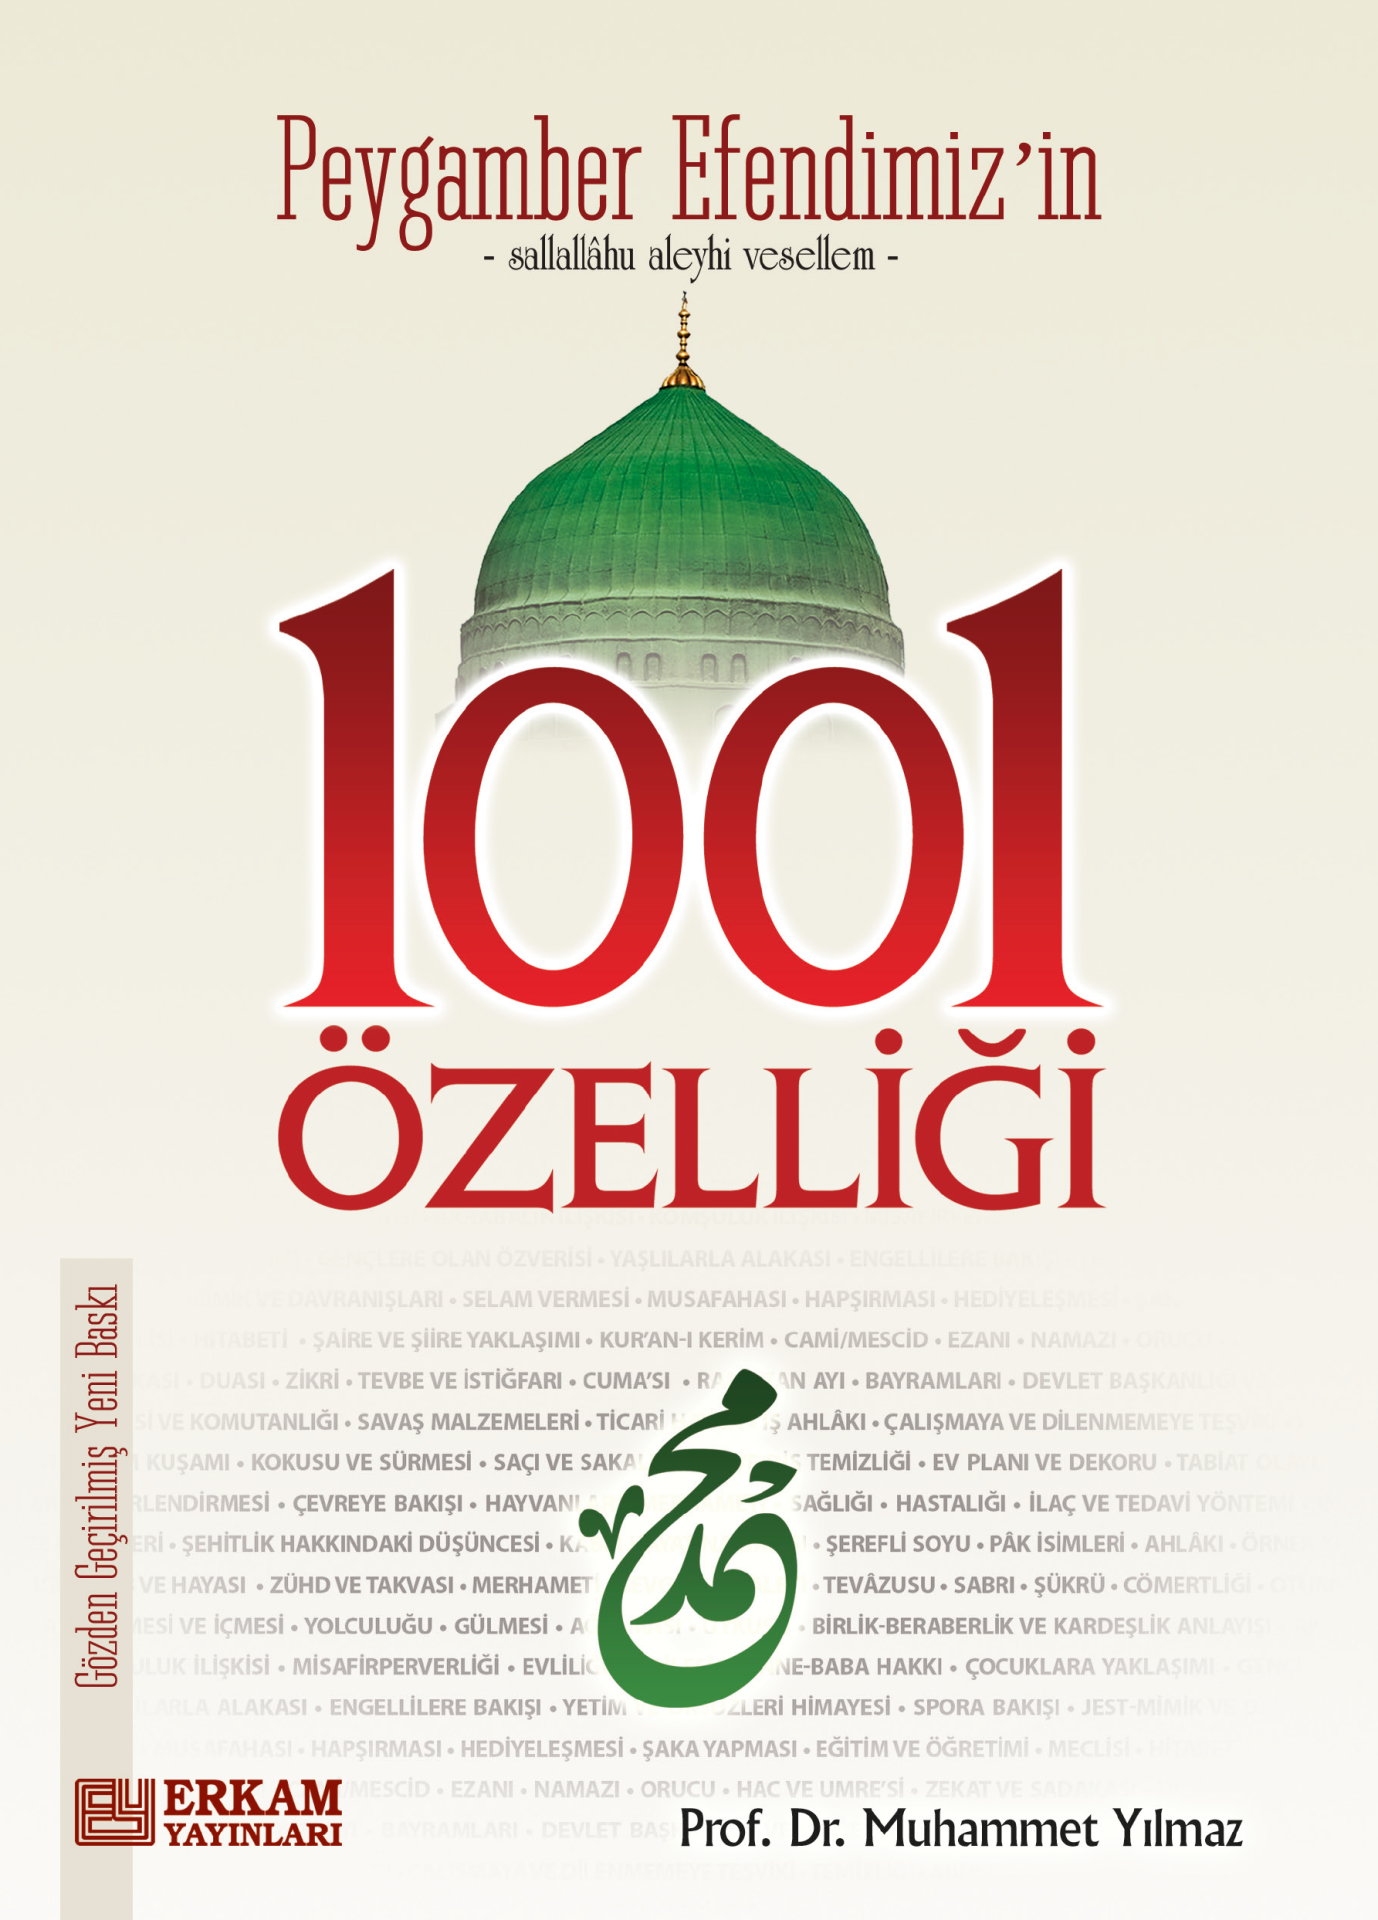 Peygamber Efendimiz'in 1001 Özelliği - Prof. Dr. Muhammet Yılmaz